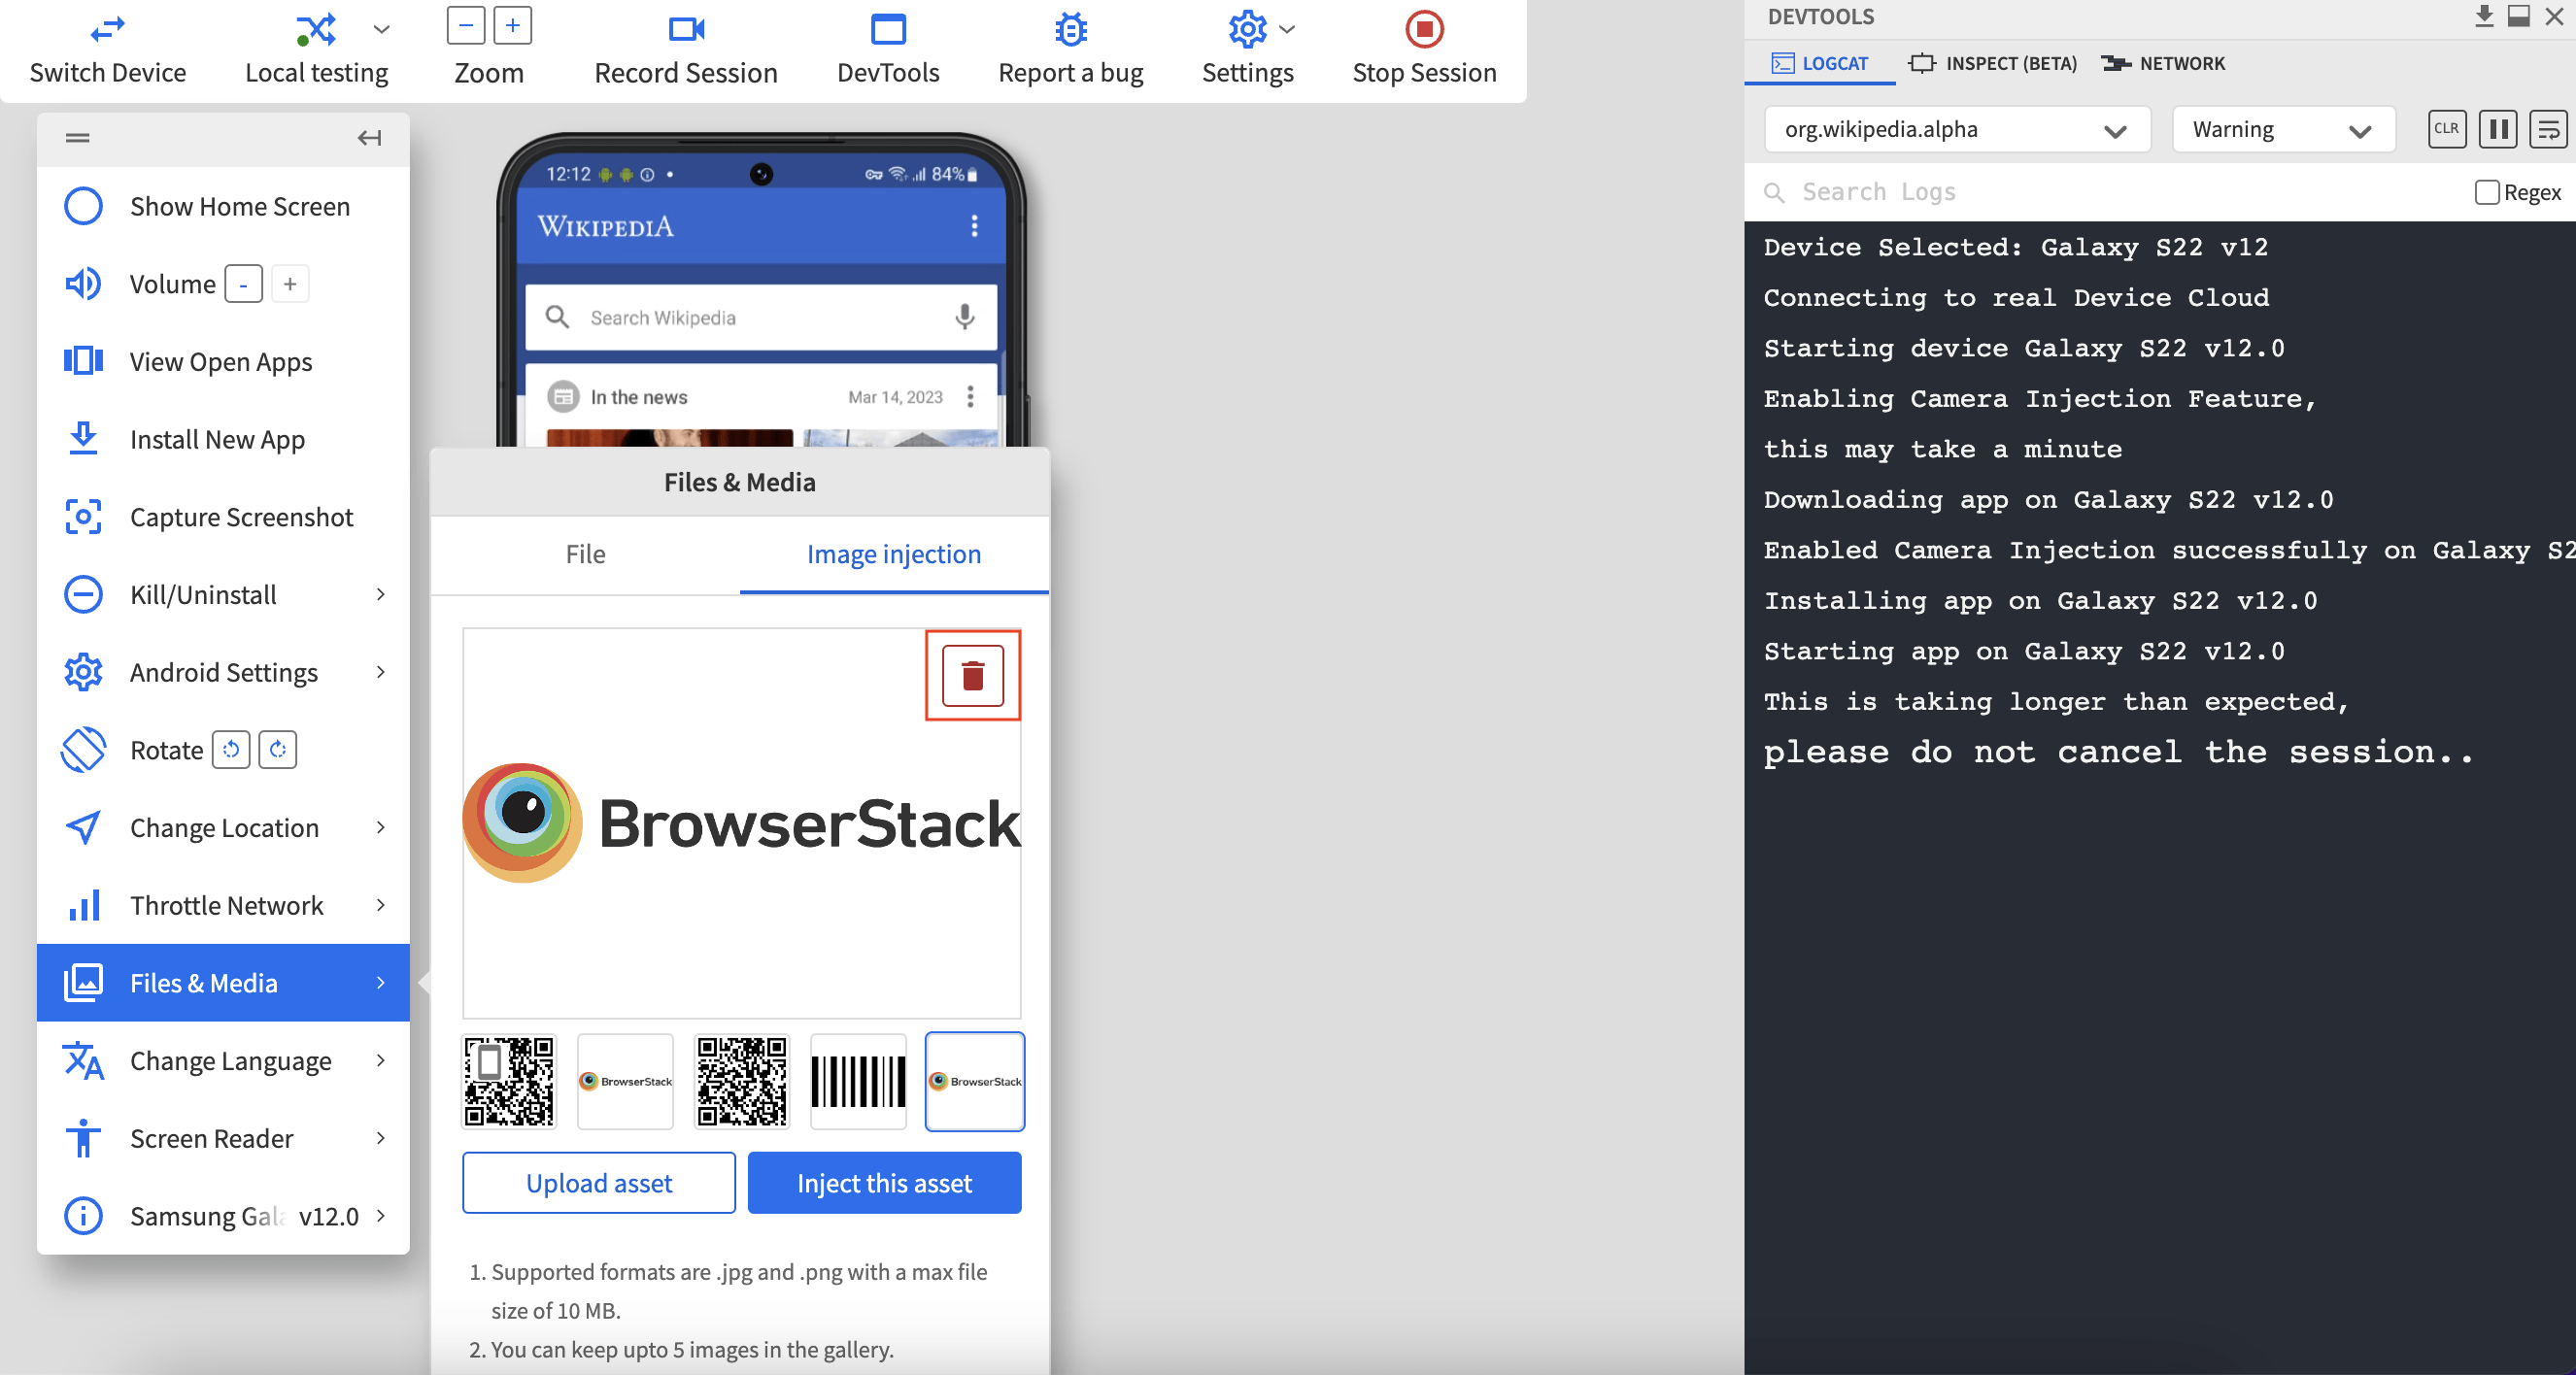 test QR code online on BrowserStack App Live